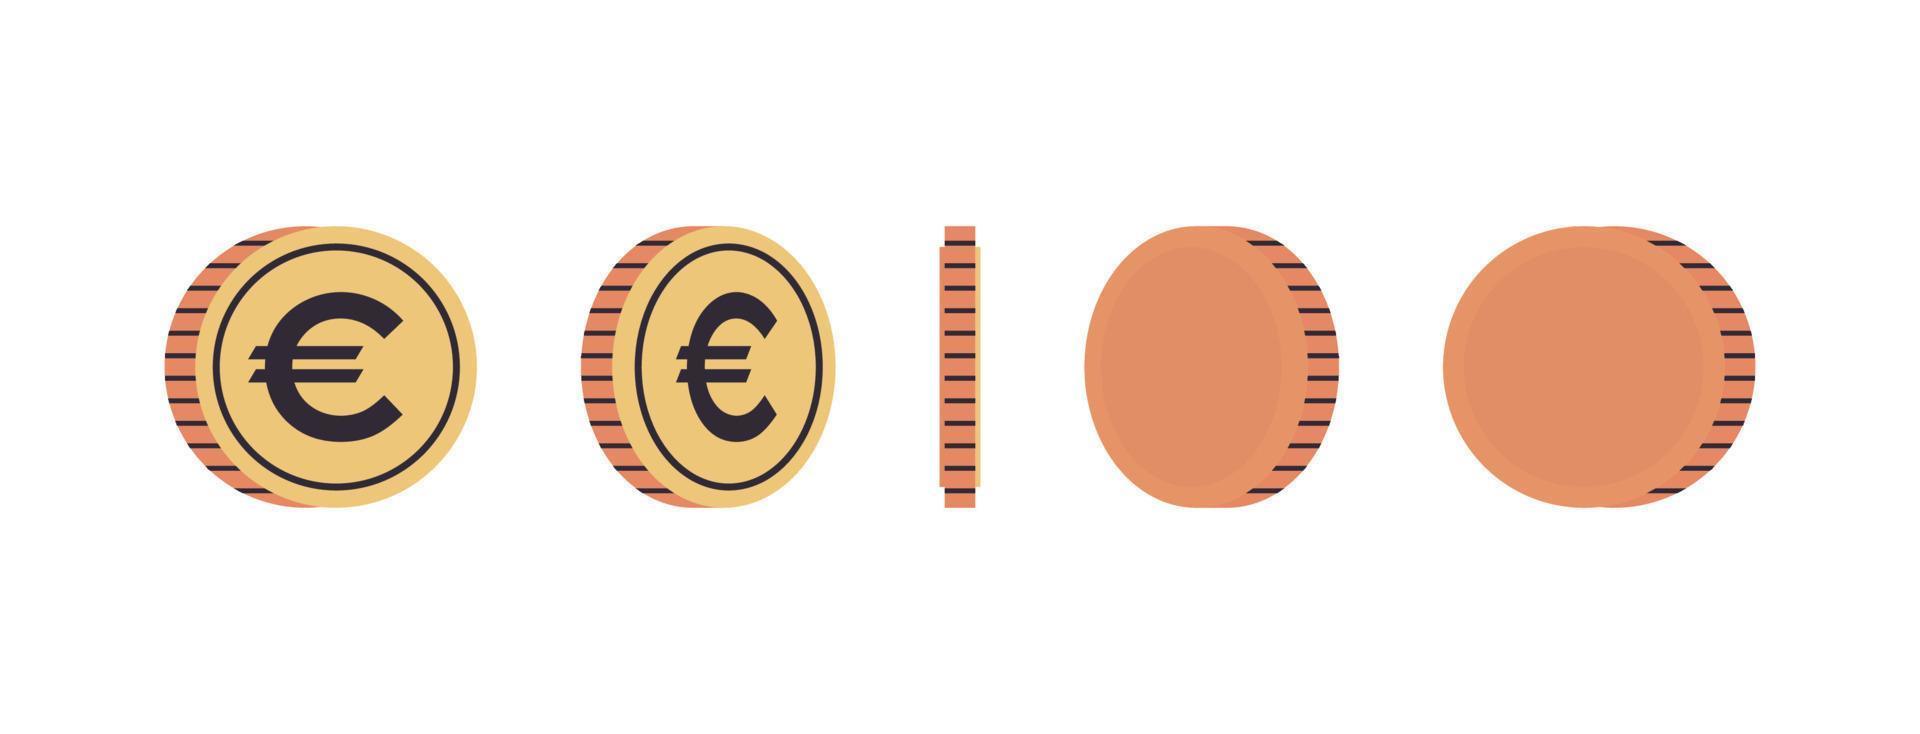 monedas de moneda internacional y monedas de oro en diferentes ángulos de concepto de rotación ilustración de vector plano de longitud completa.